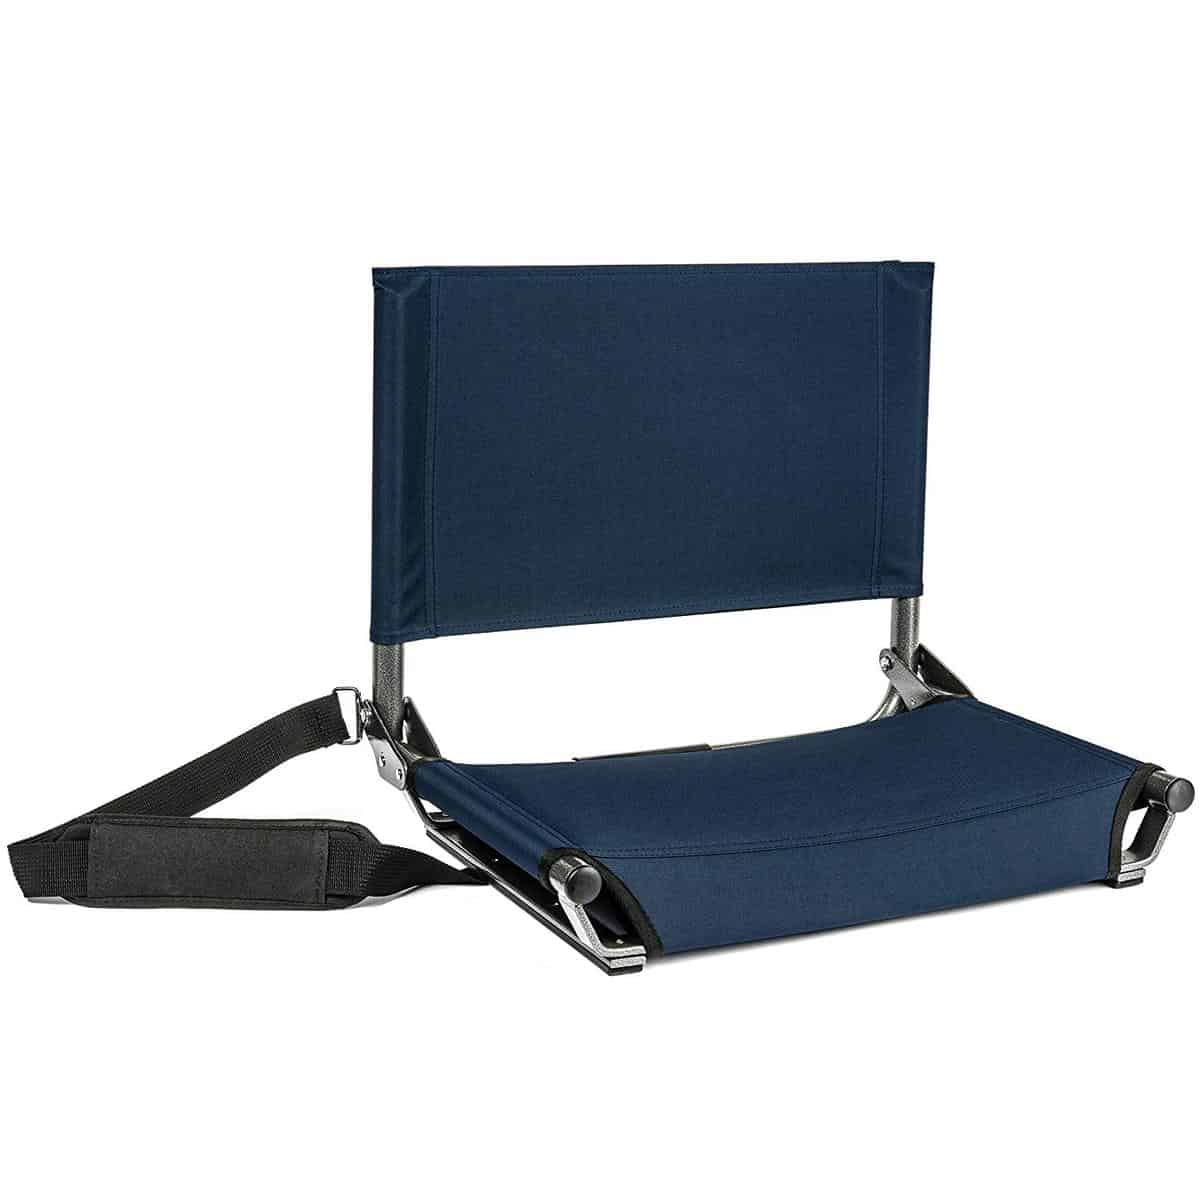 Cascade Mountain Tech Portable Folding Steel Stadium Seats for Bleachers